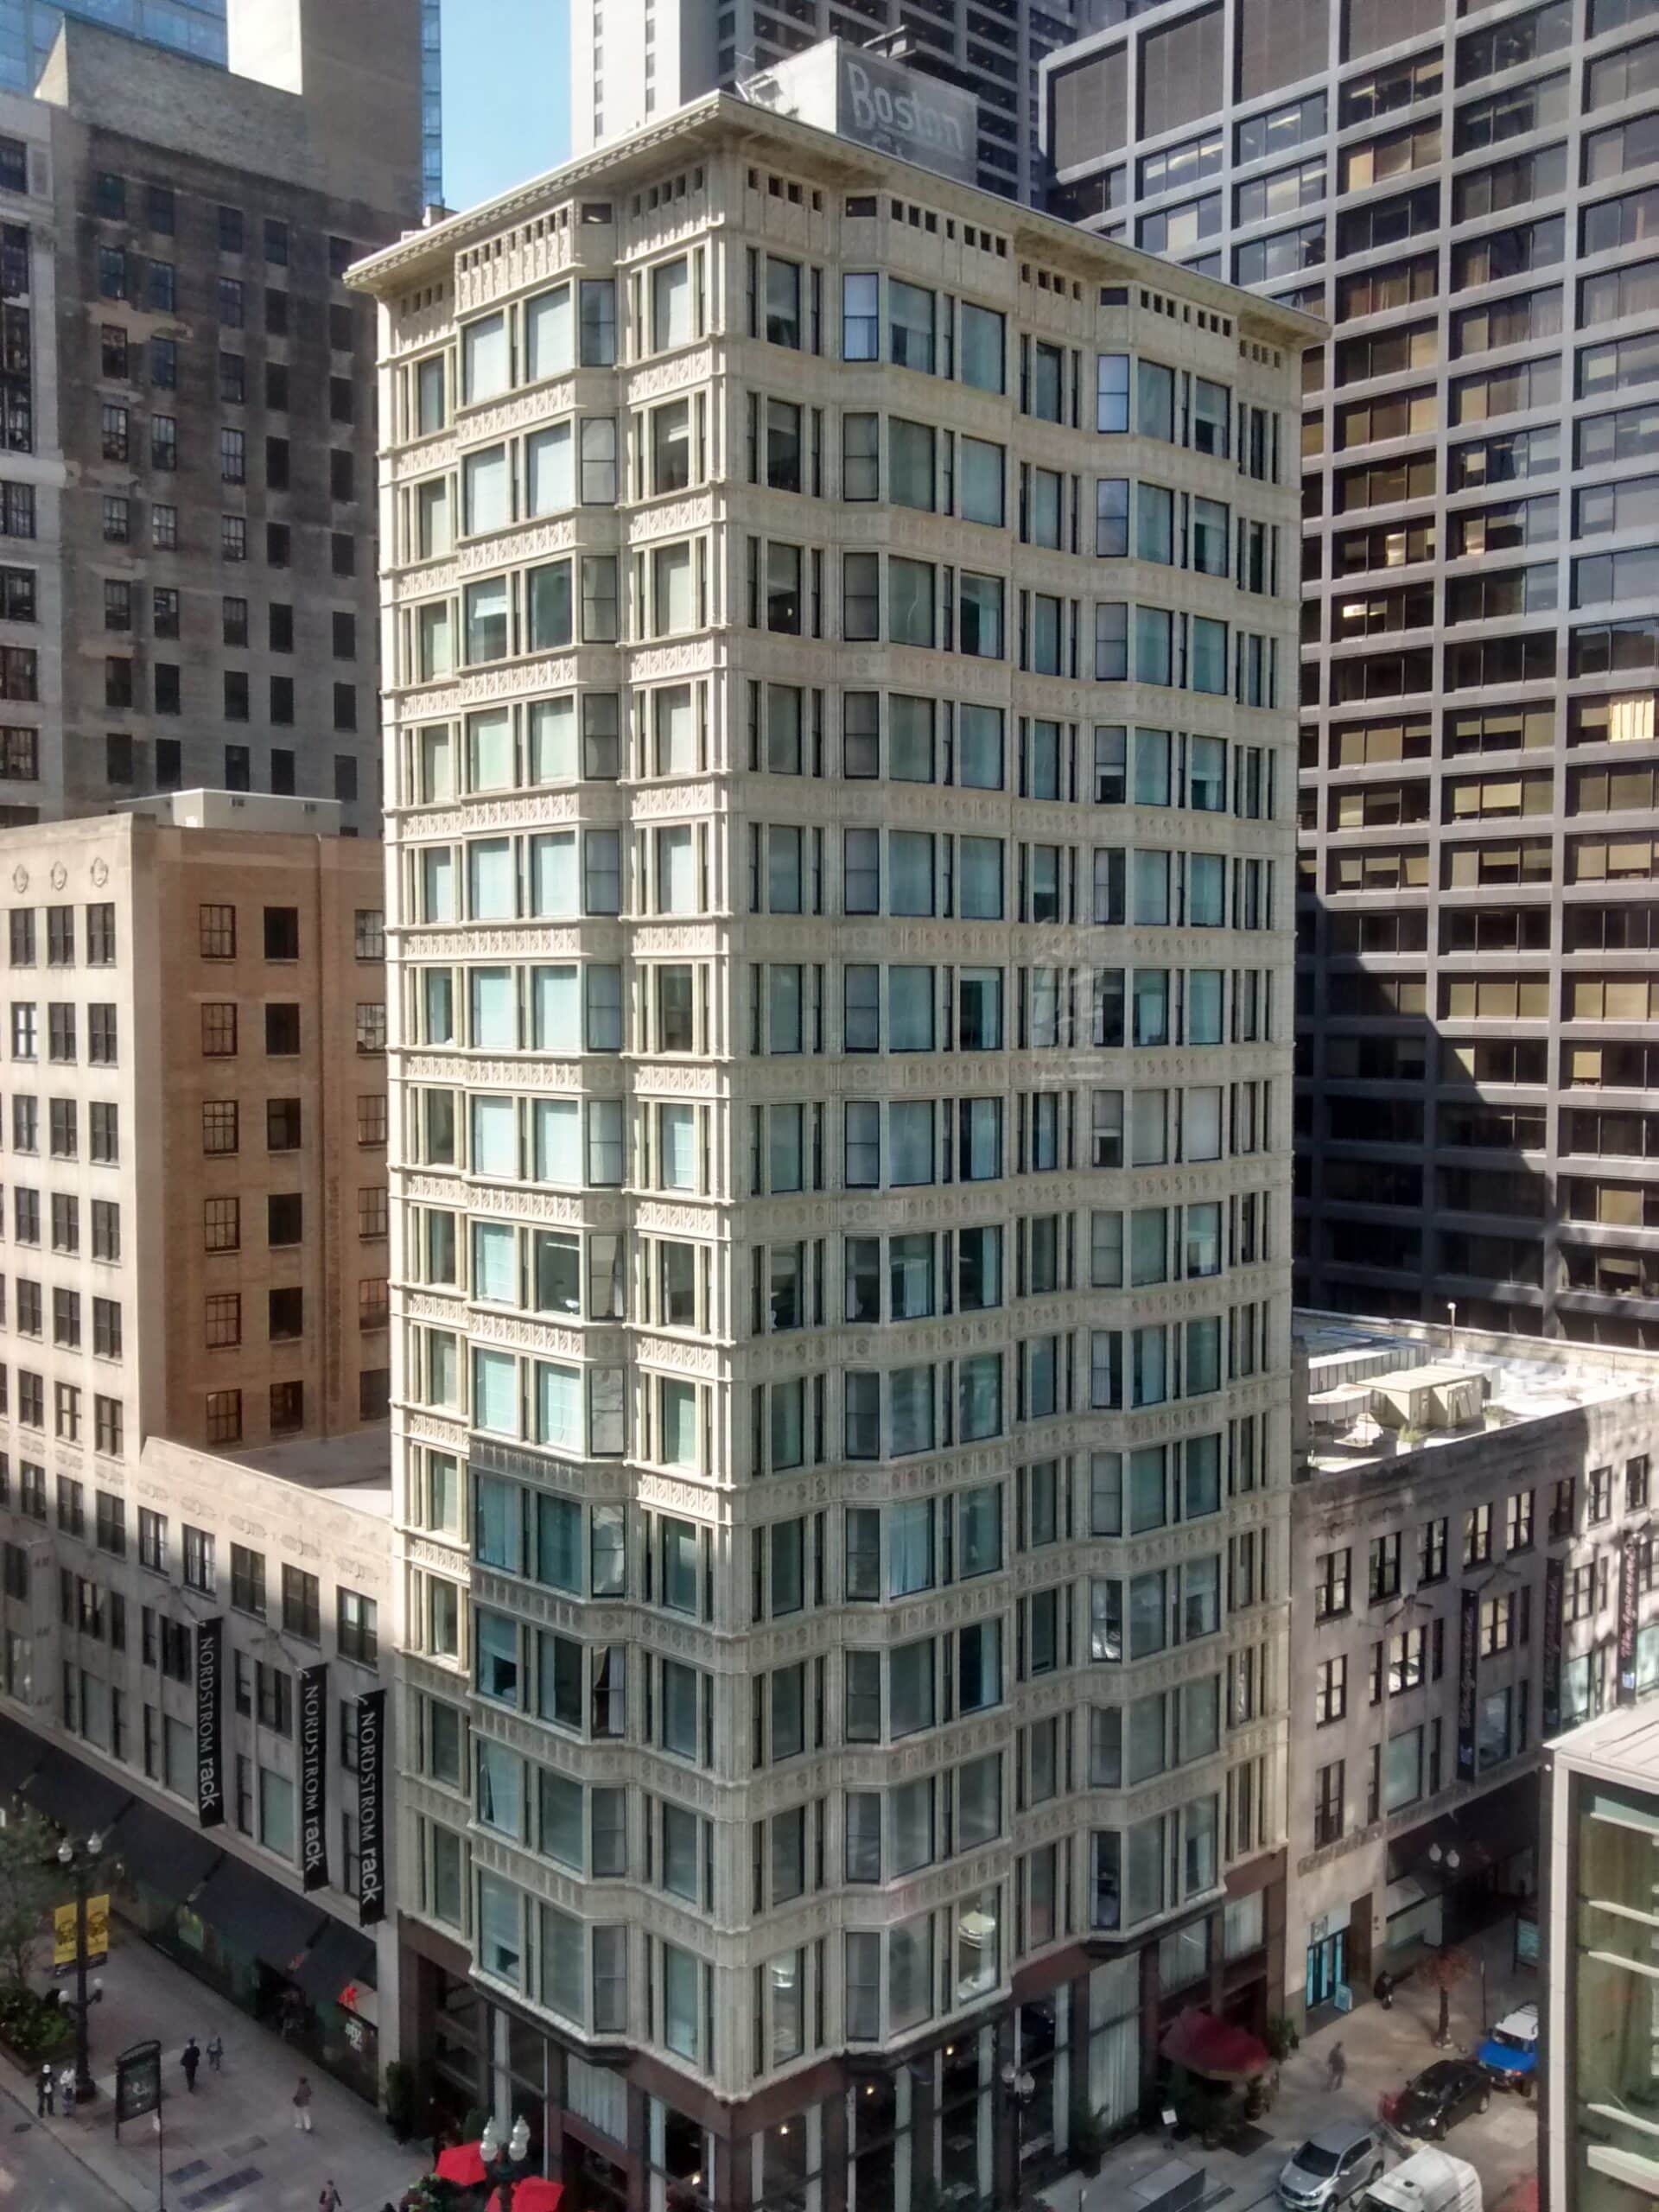 Reliance Building, de Chicago, o primeiro arranha-céu a ter janelas de vidro